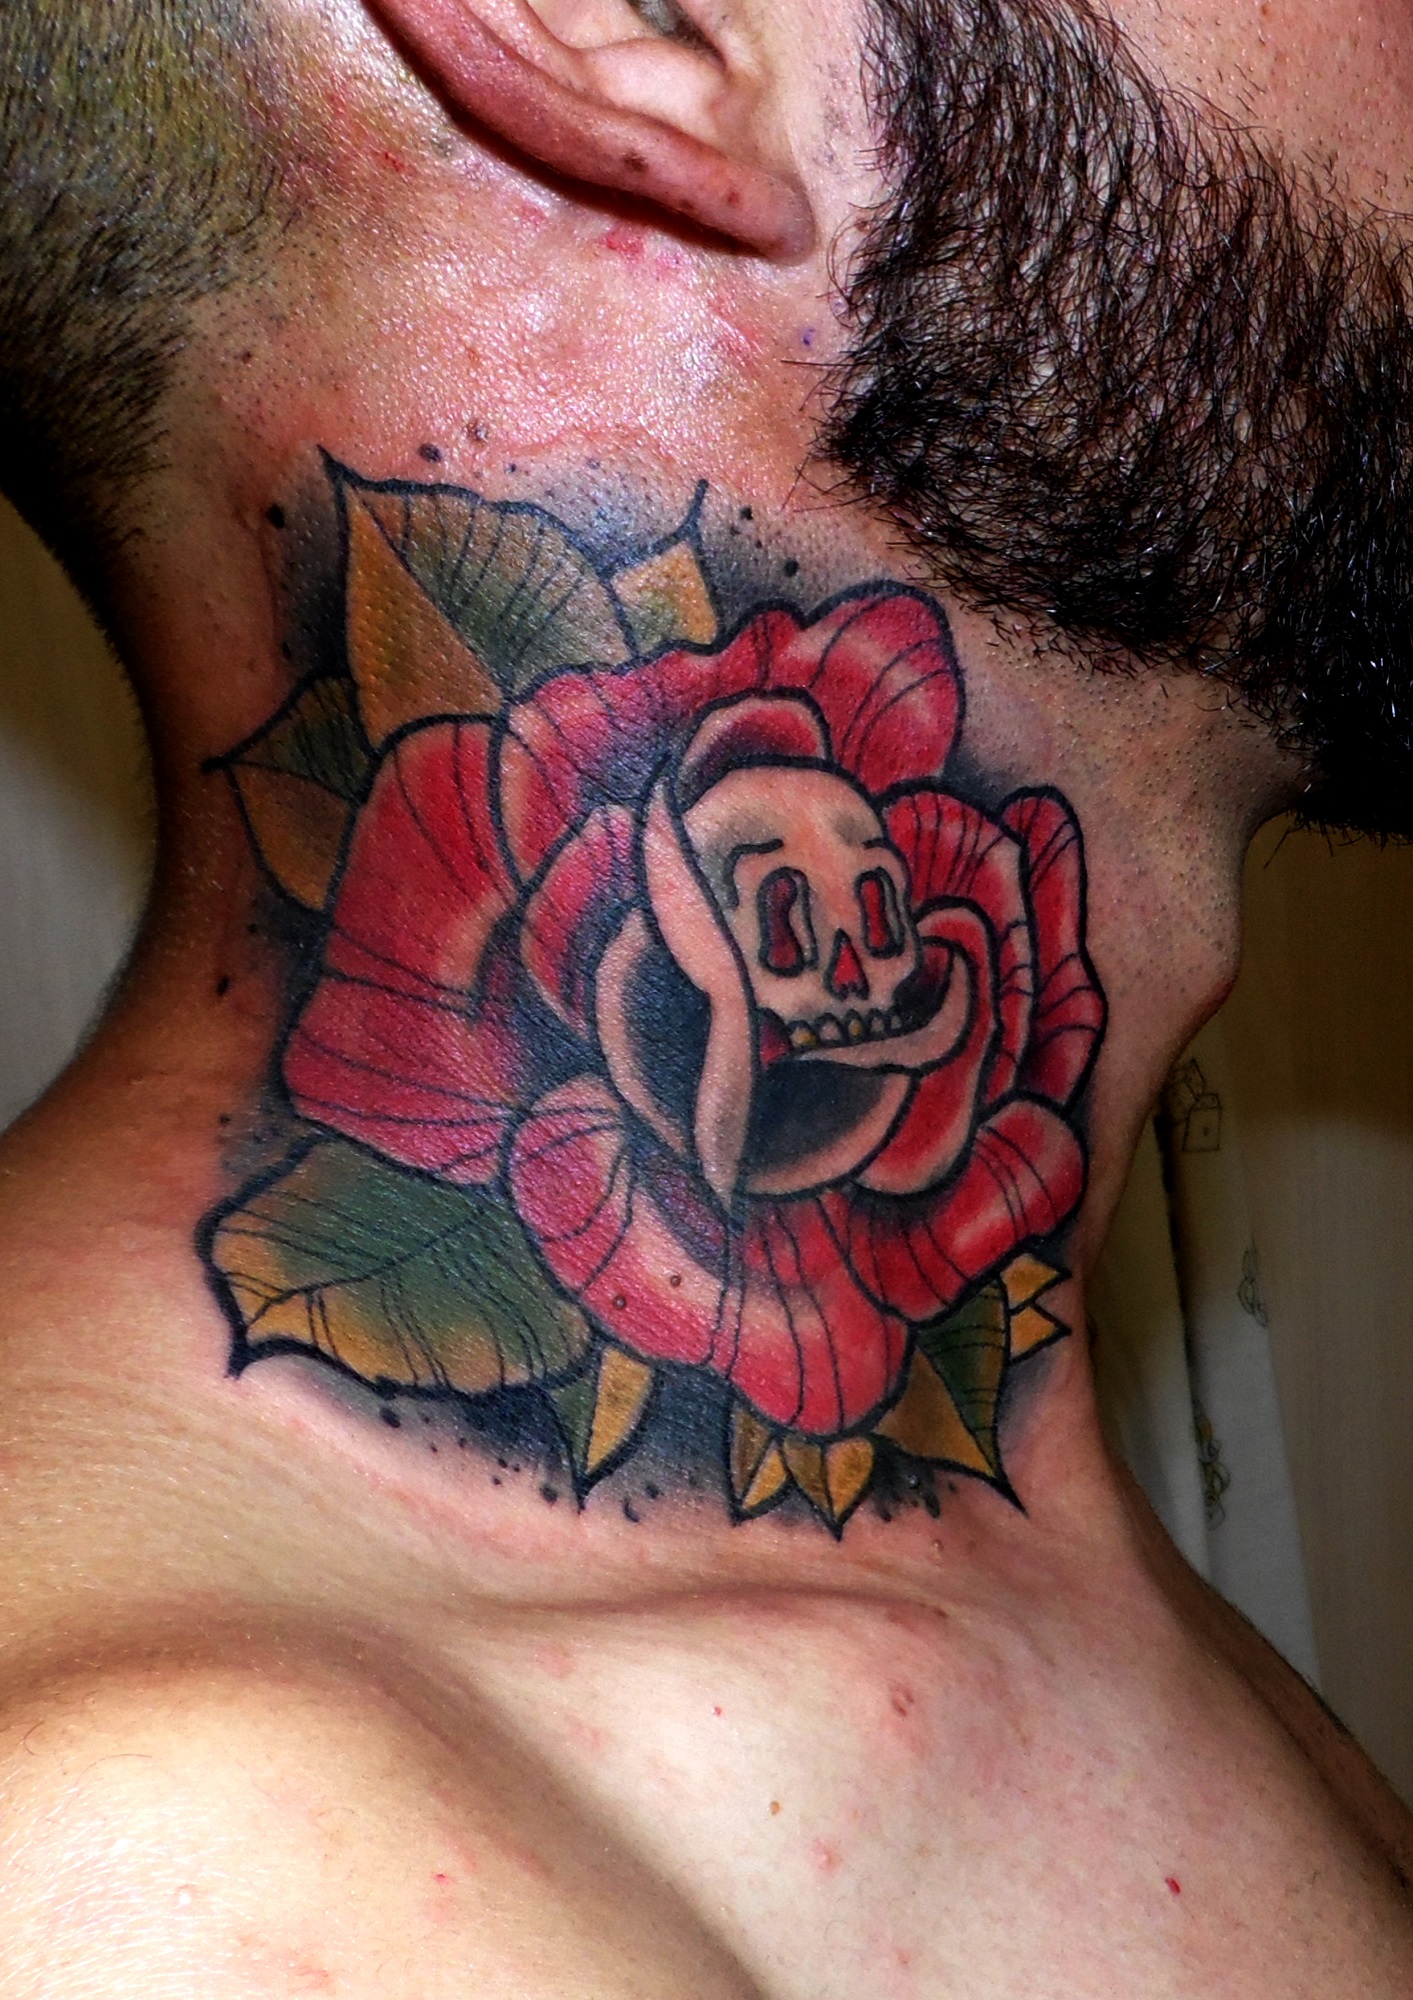 tattoo rosa cuello neotradicional trecedepicas 13 de picas jaca huesca tatuajes spain color cuello calavera